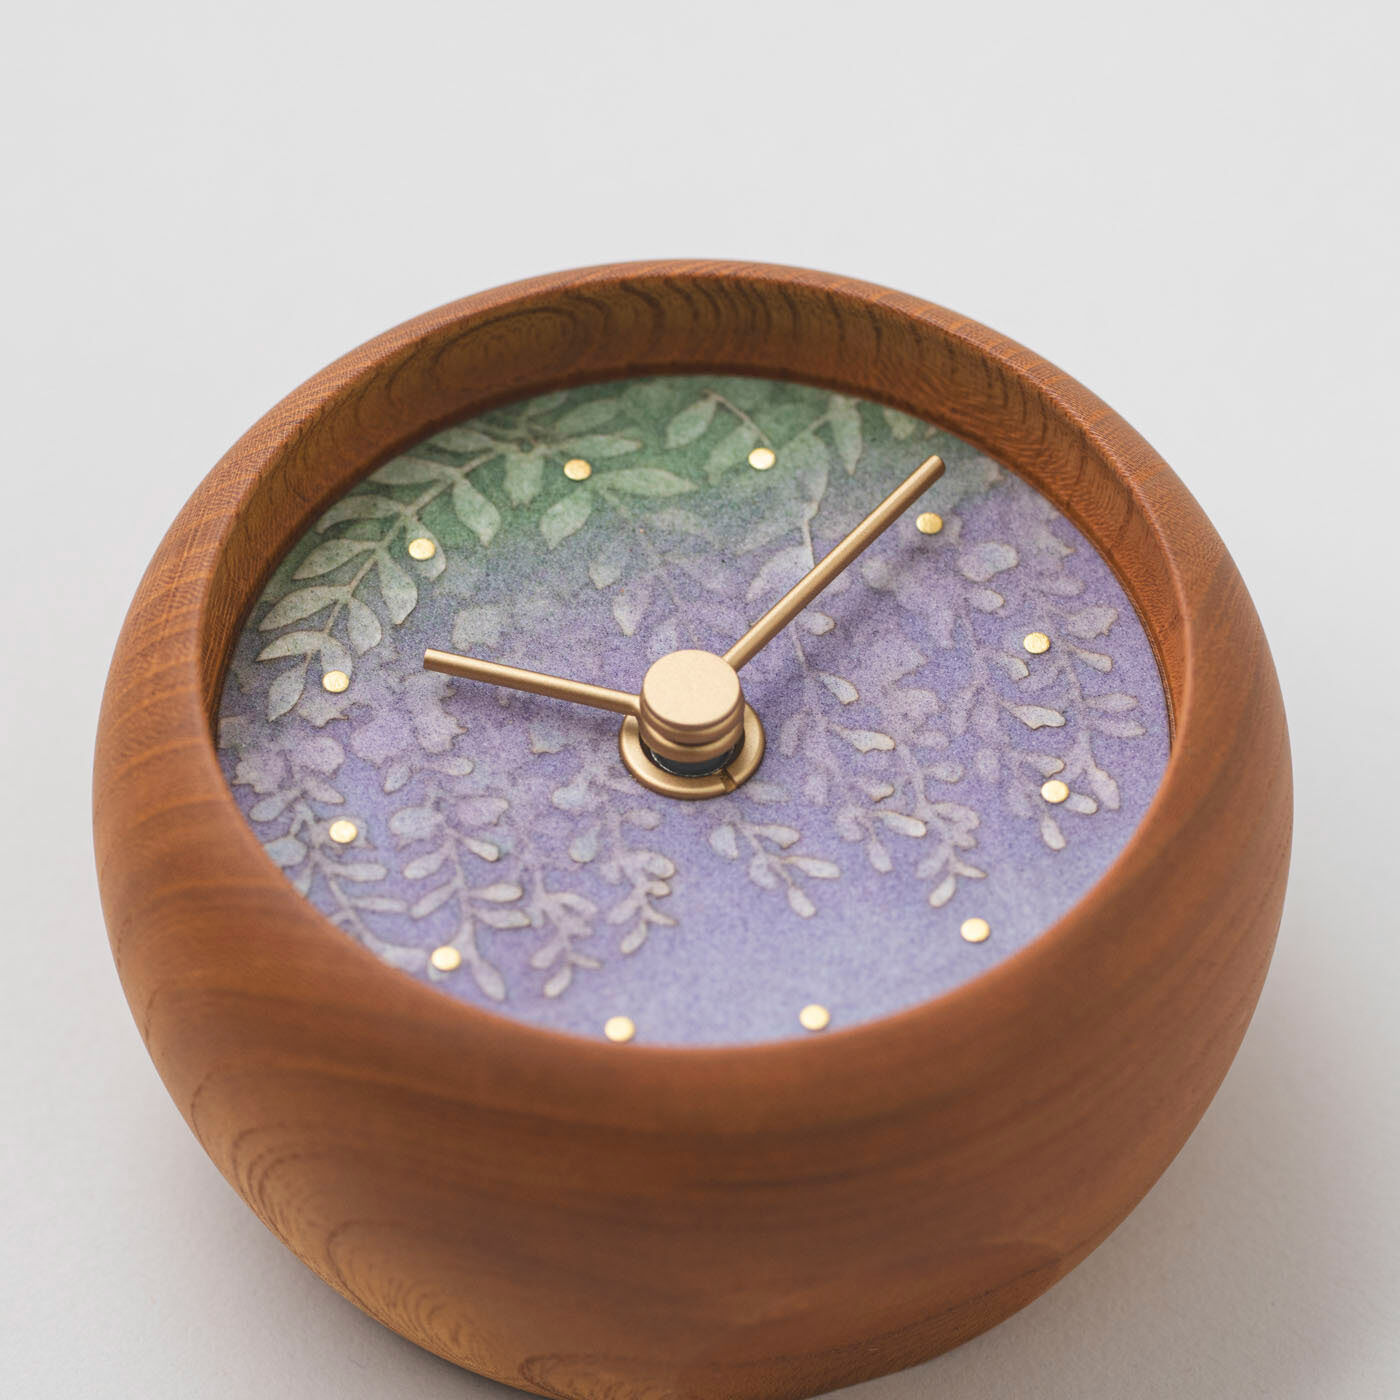 ＆Stories|金沢の時計職人が手掛けた たおやかに揺れる 藤の花に見惚れる置時計〈欅〉|日本画の画材や技法を取り入れて描かれた美術品のような文字盤。